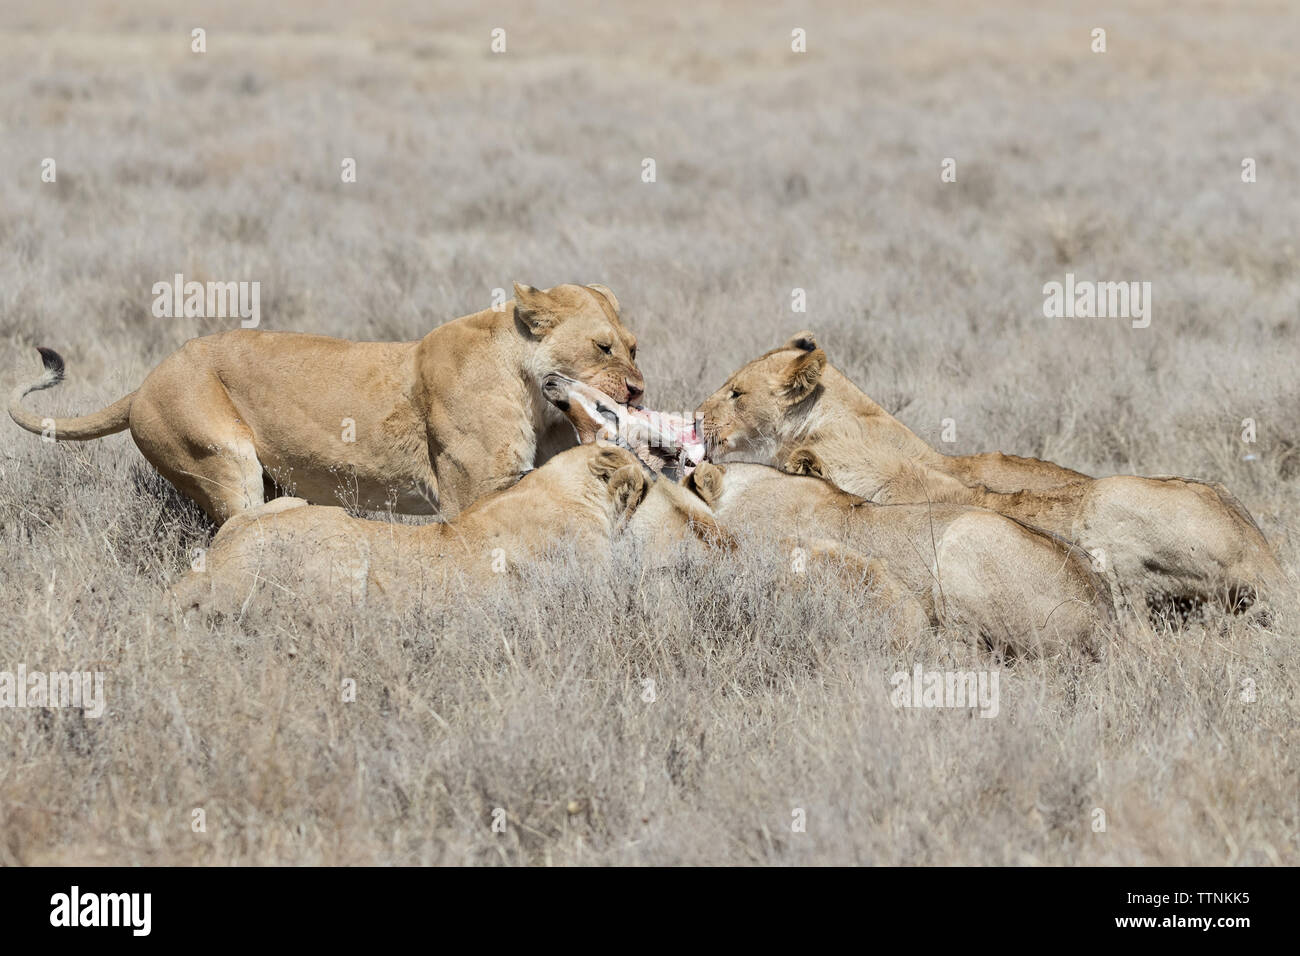 Lions  (Panthera leo) fighting over remains of a kill, Ndutu, Tanzania Stock Photo